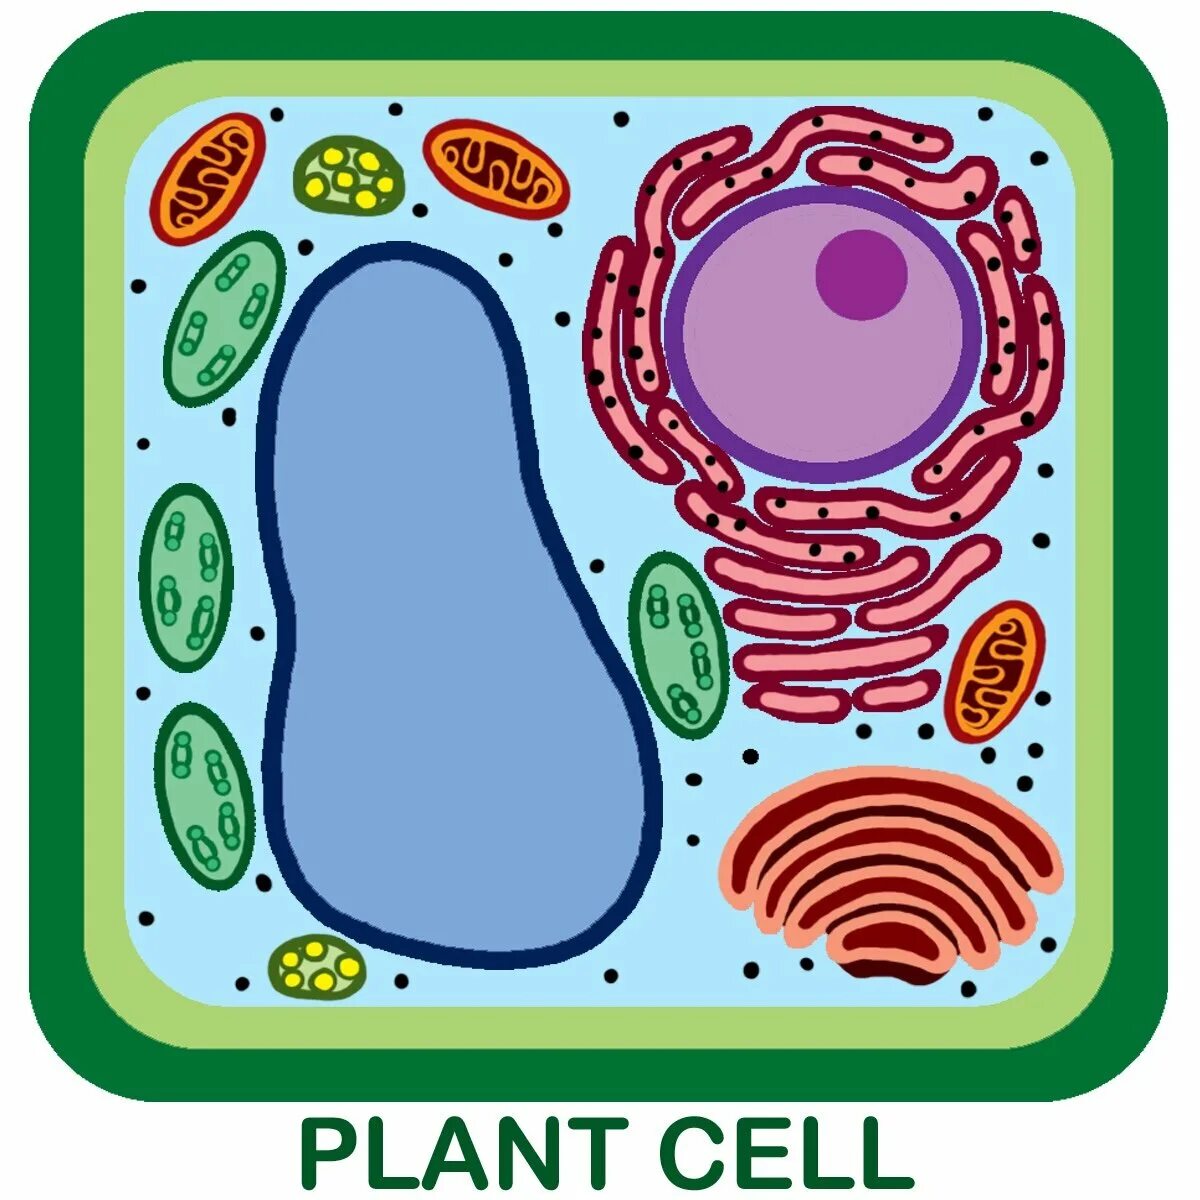 Клетка растения. Растительная клетка. Клетка бактерии. Клетка растения рисунок.